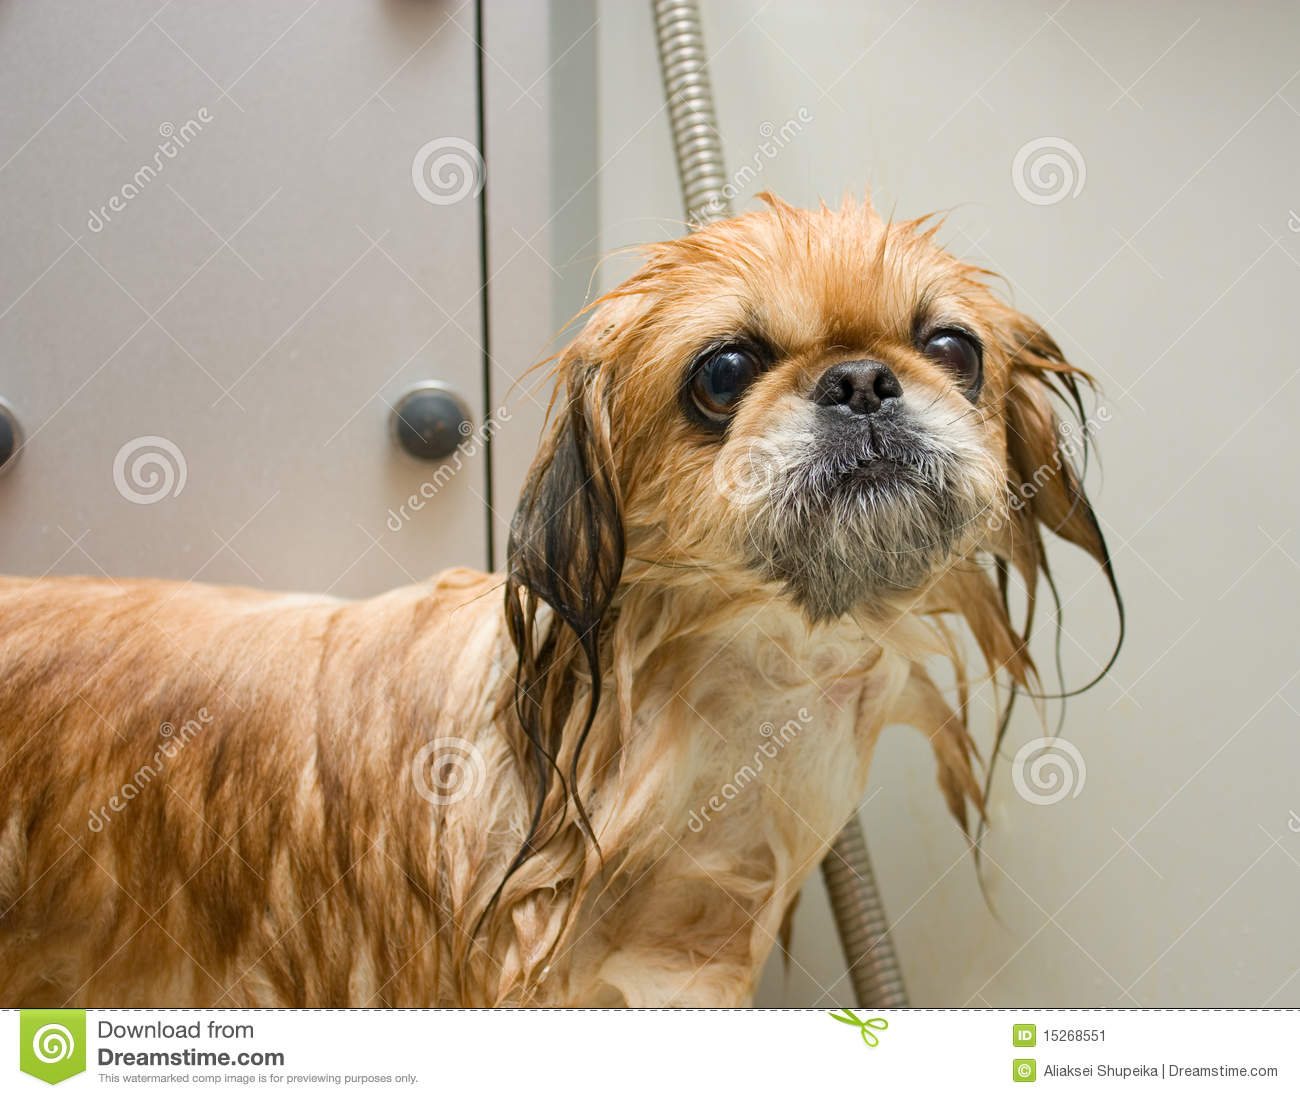 Wet Dog Stock Image   Image  15268551